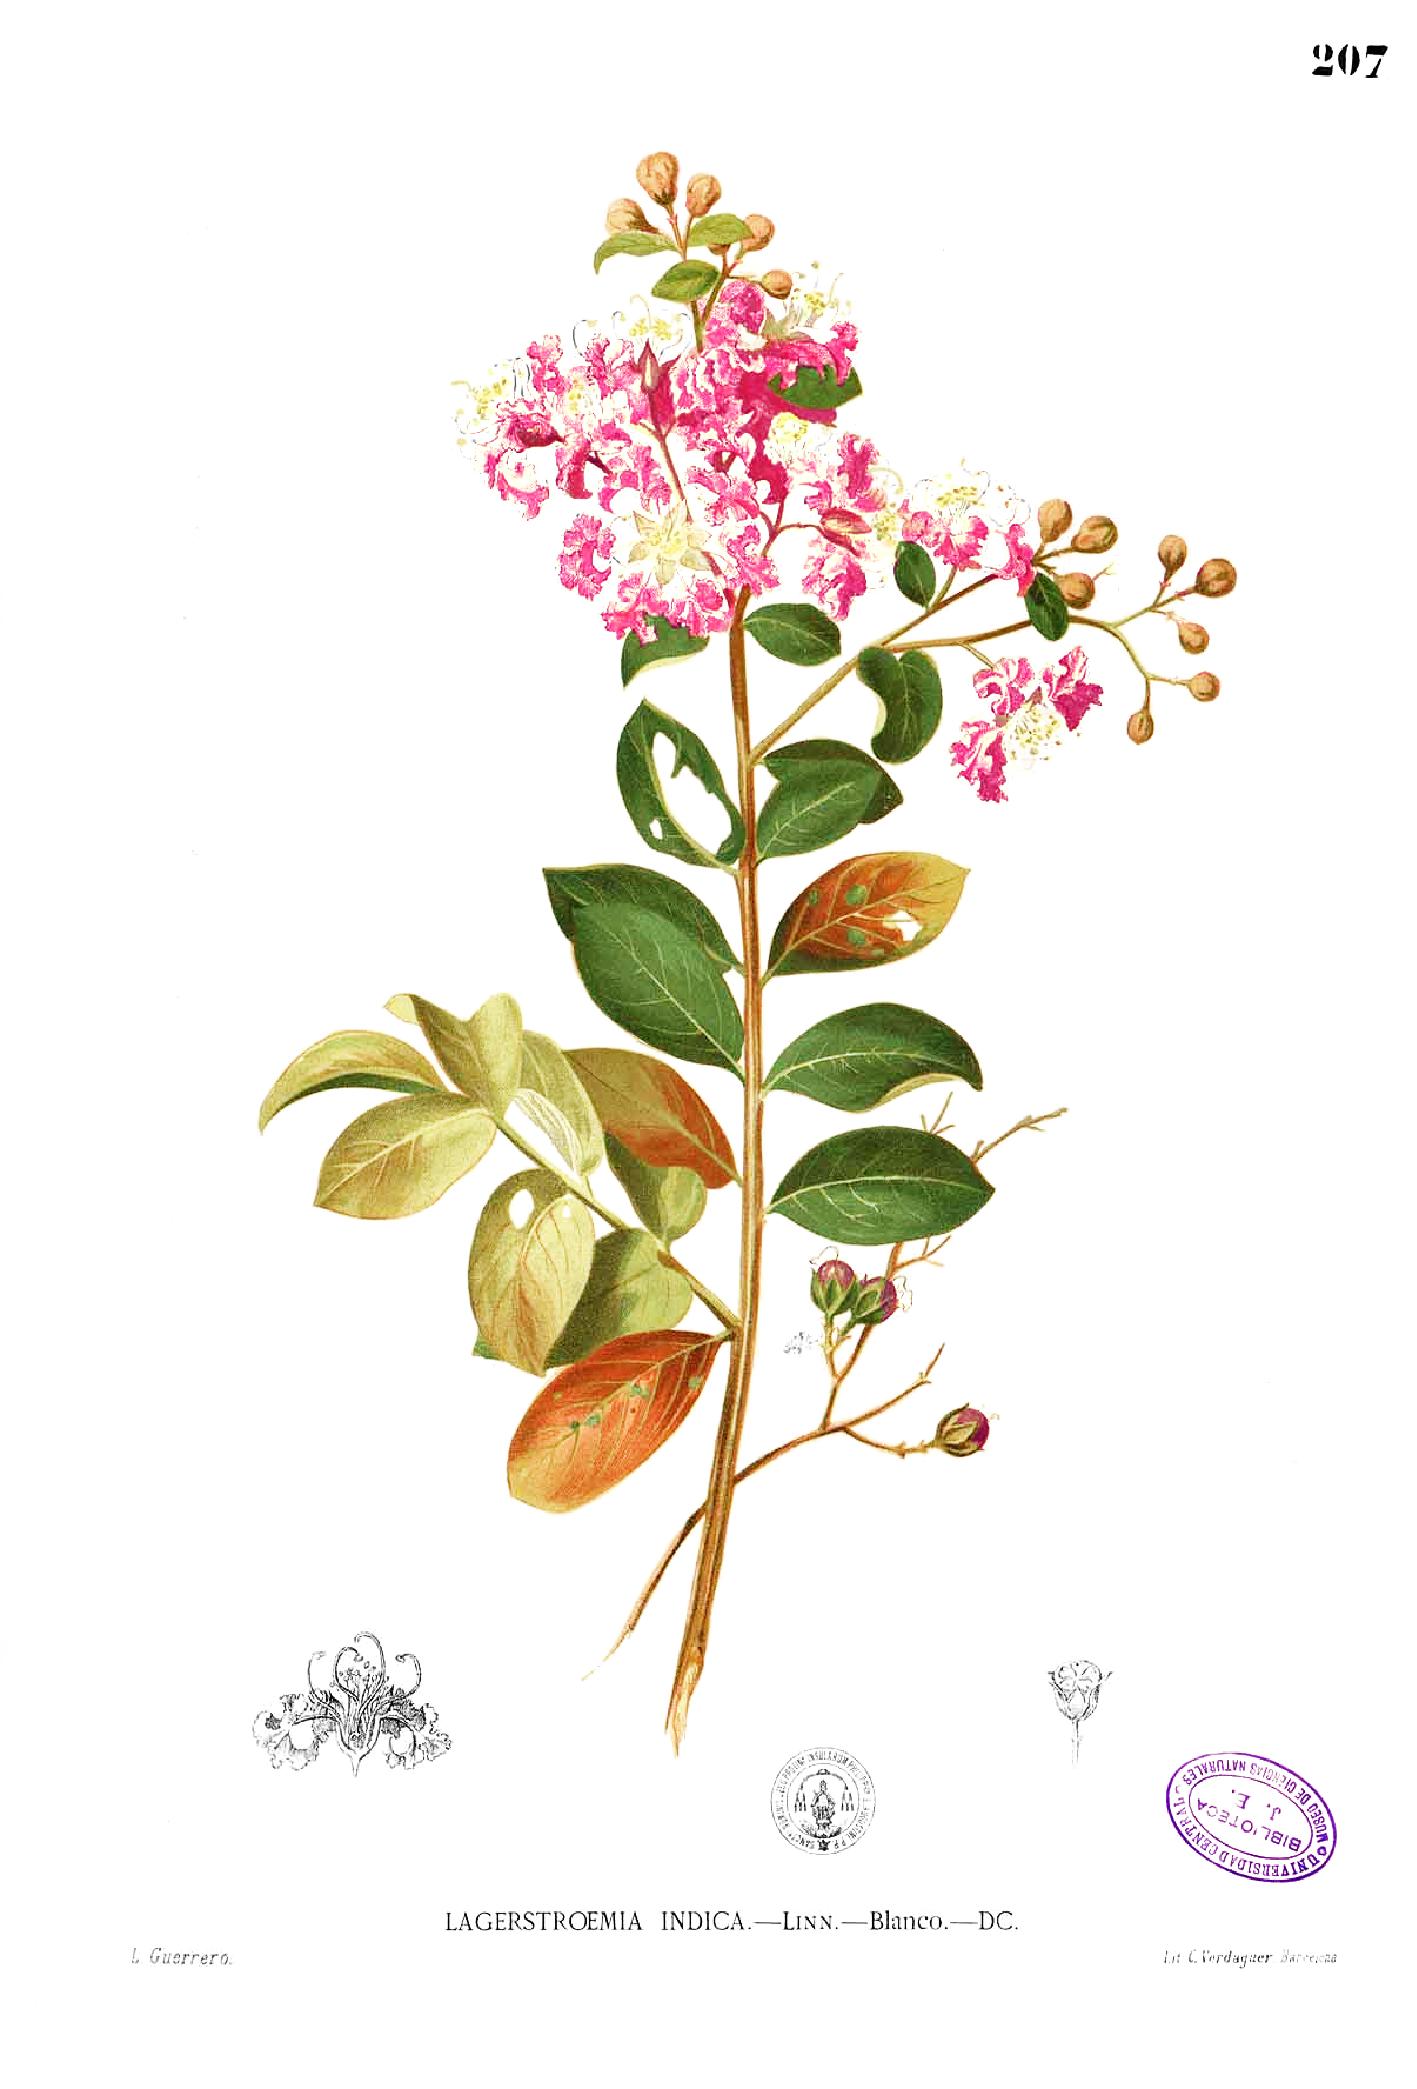 ลักษณะของกลีบดอกและก้านดอกยี่เข่ง (Lagerstroemia Indica L.)